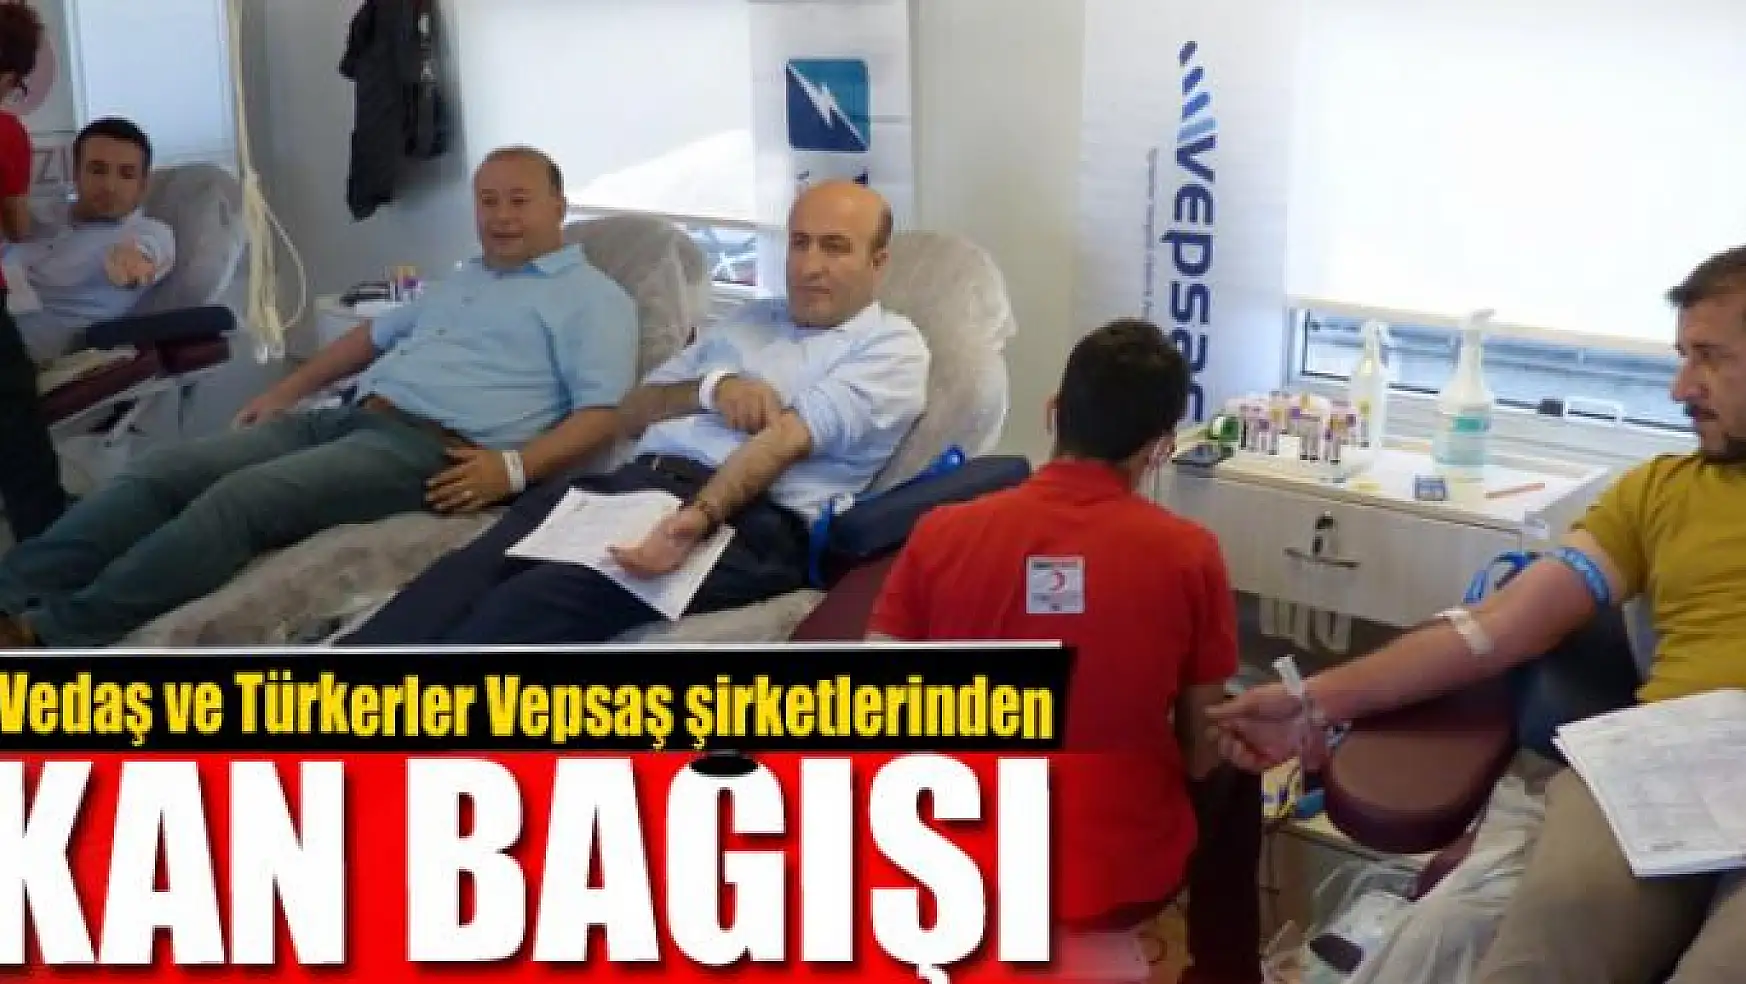 Vedaş ve Türkerler Vepsaş şirketlerinden kan bağışı 